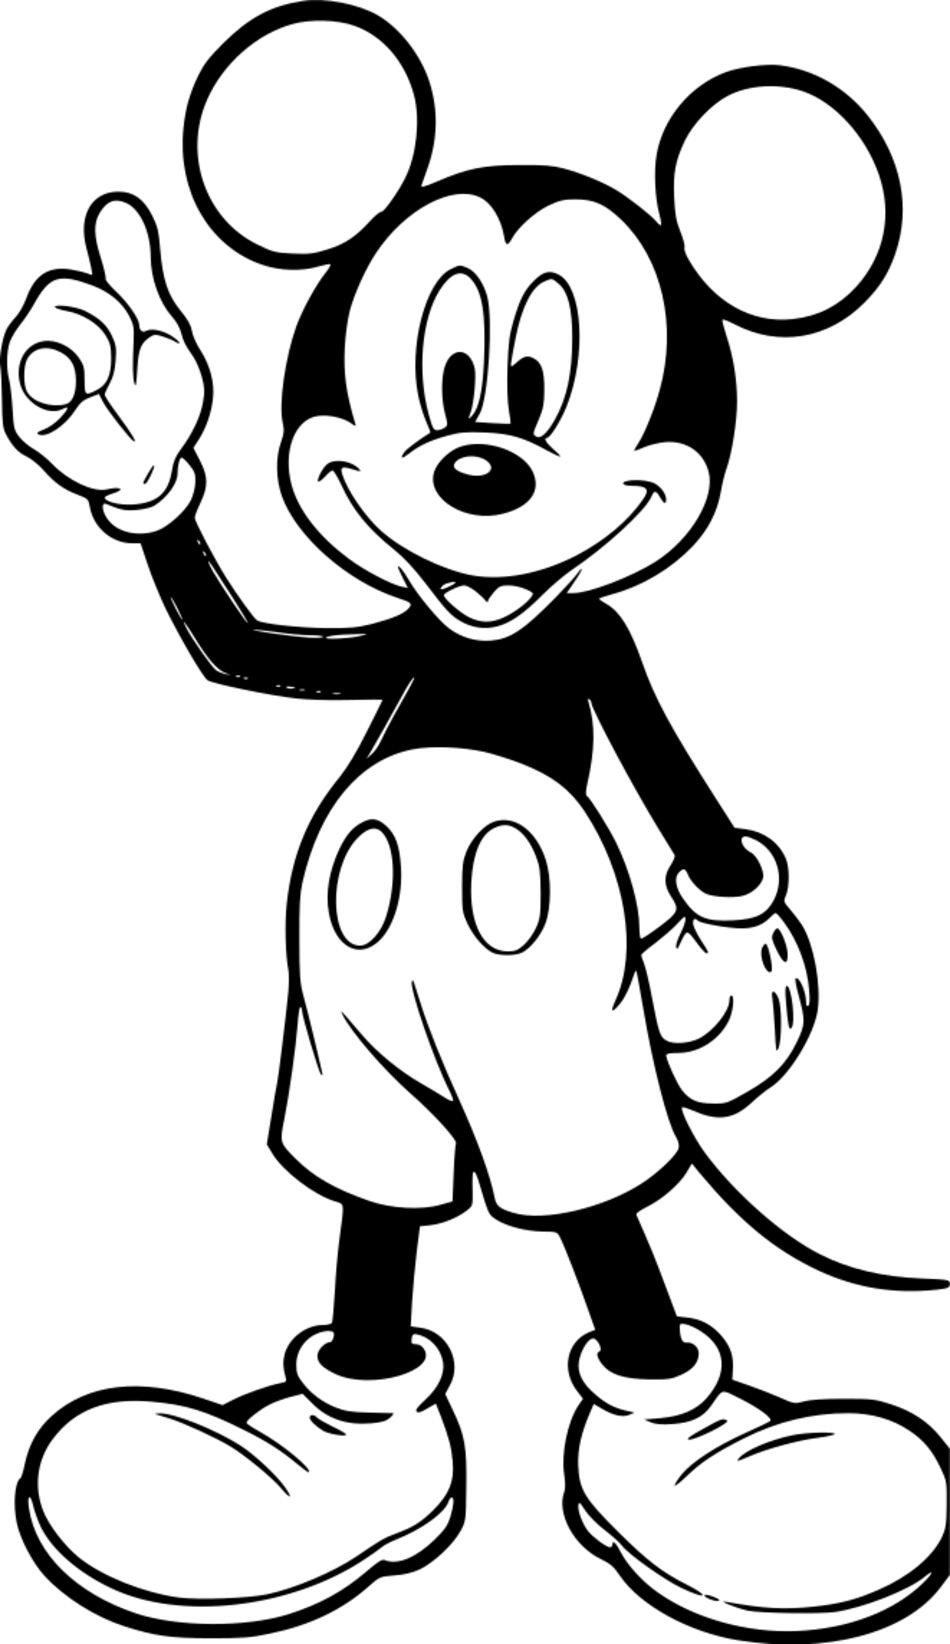 Livre de coloriage Mickey Mouse de 